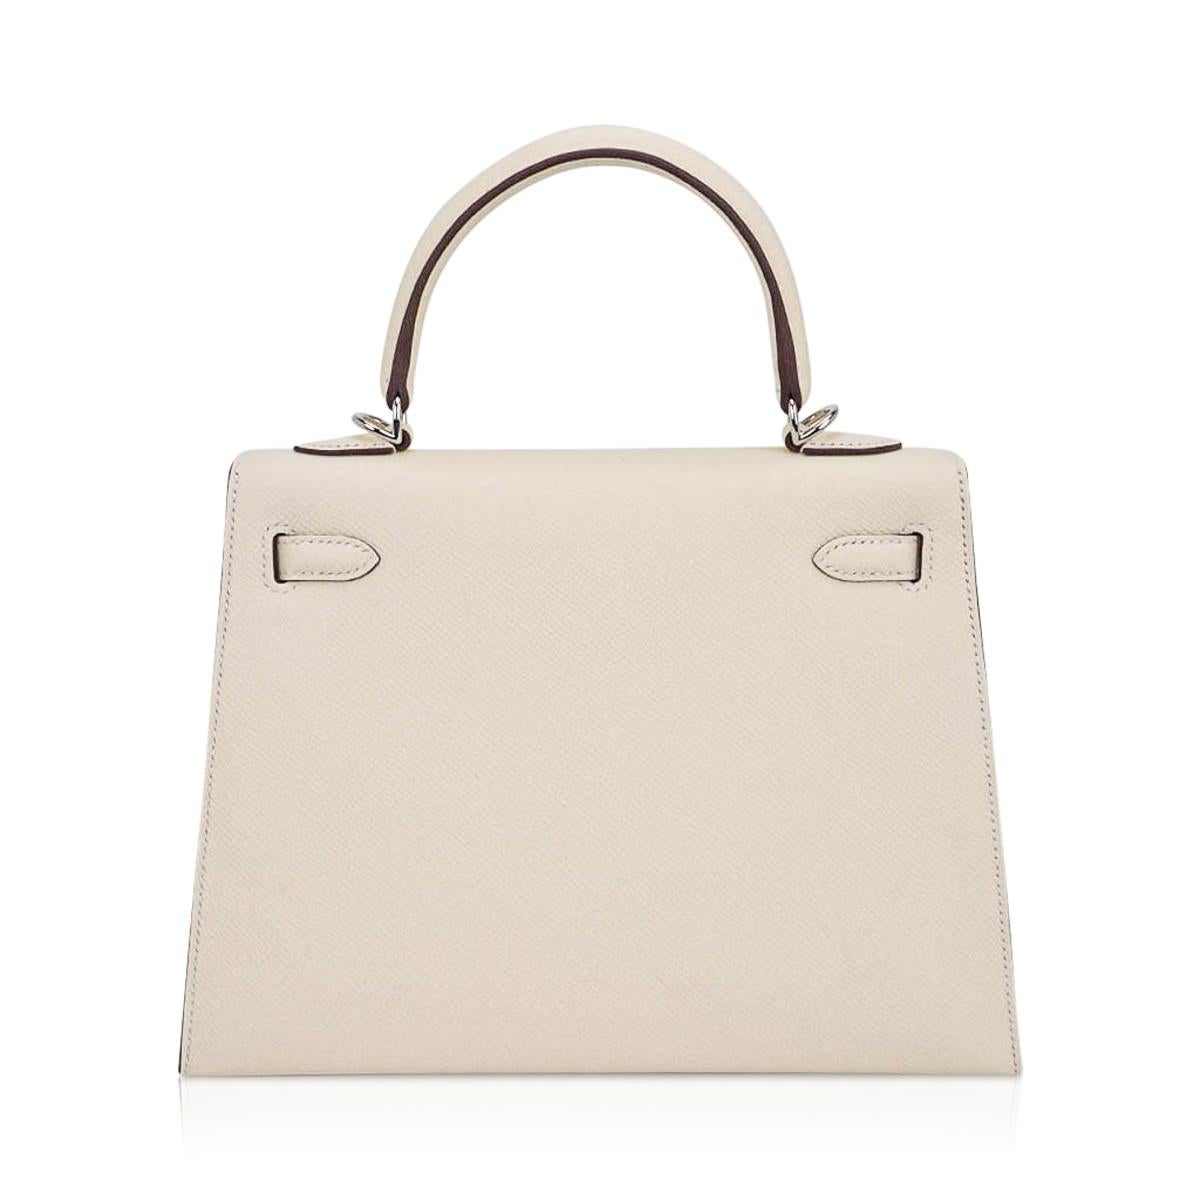 Hermes Kelly 25 Sellier Bag Nata Palladium Hardware Epsom Leather For Sale 2